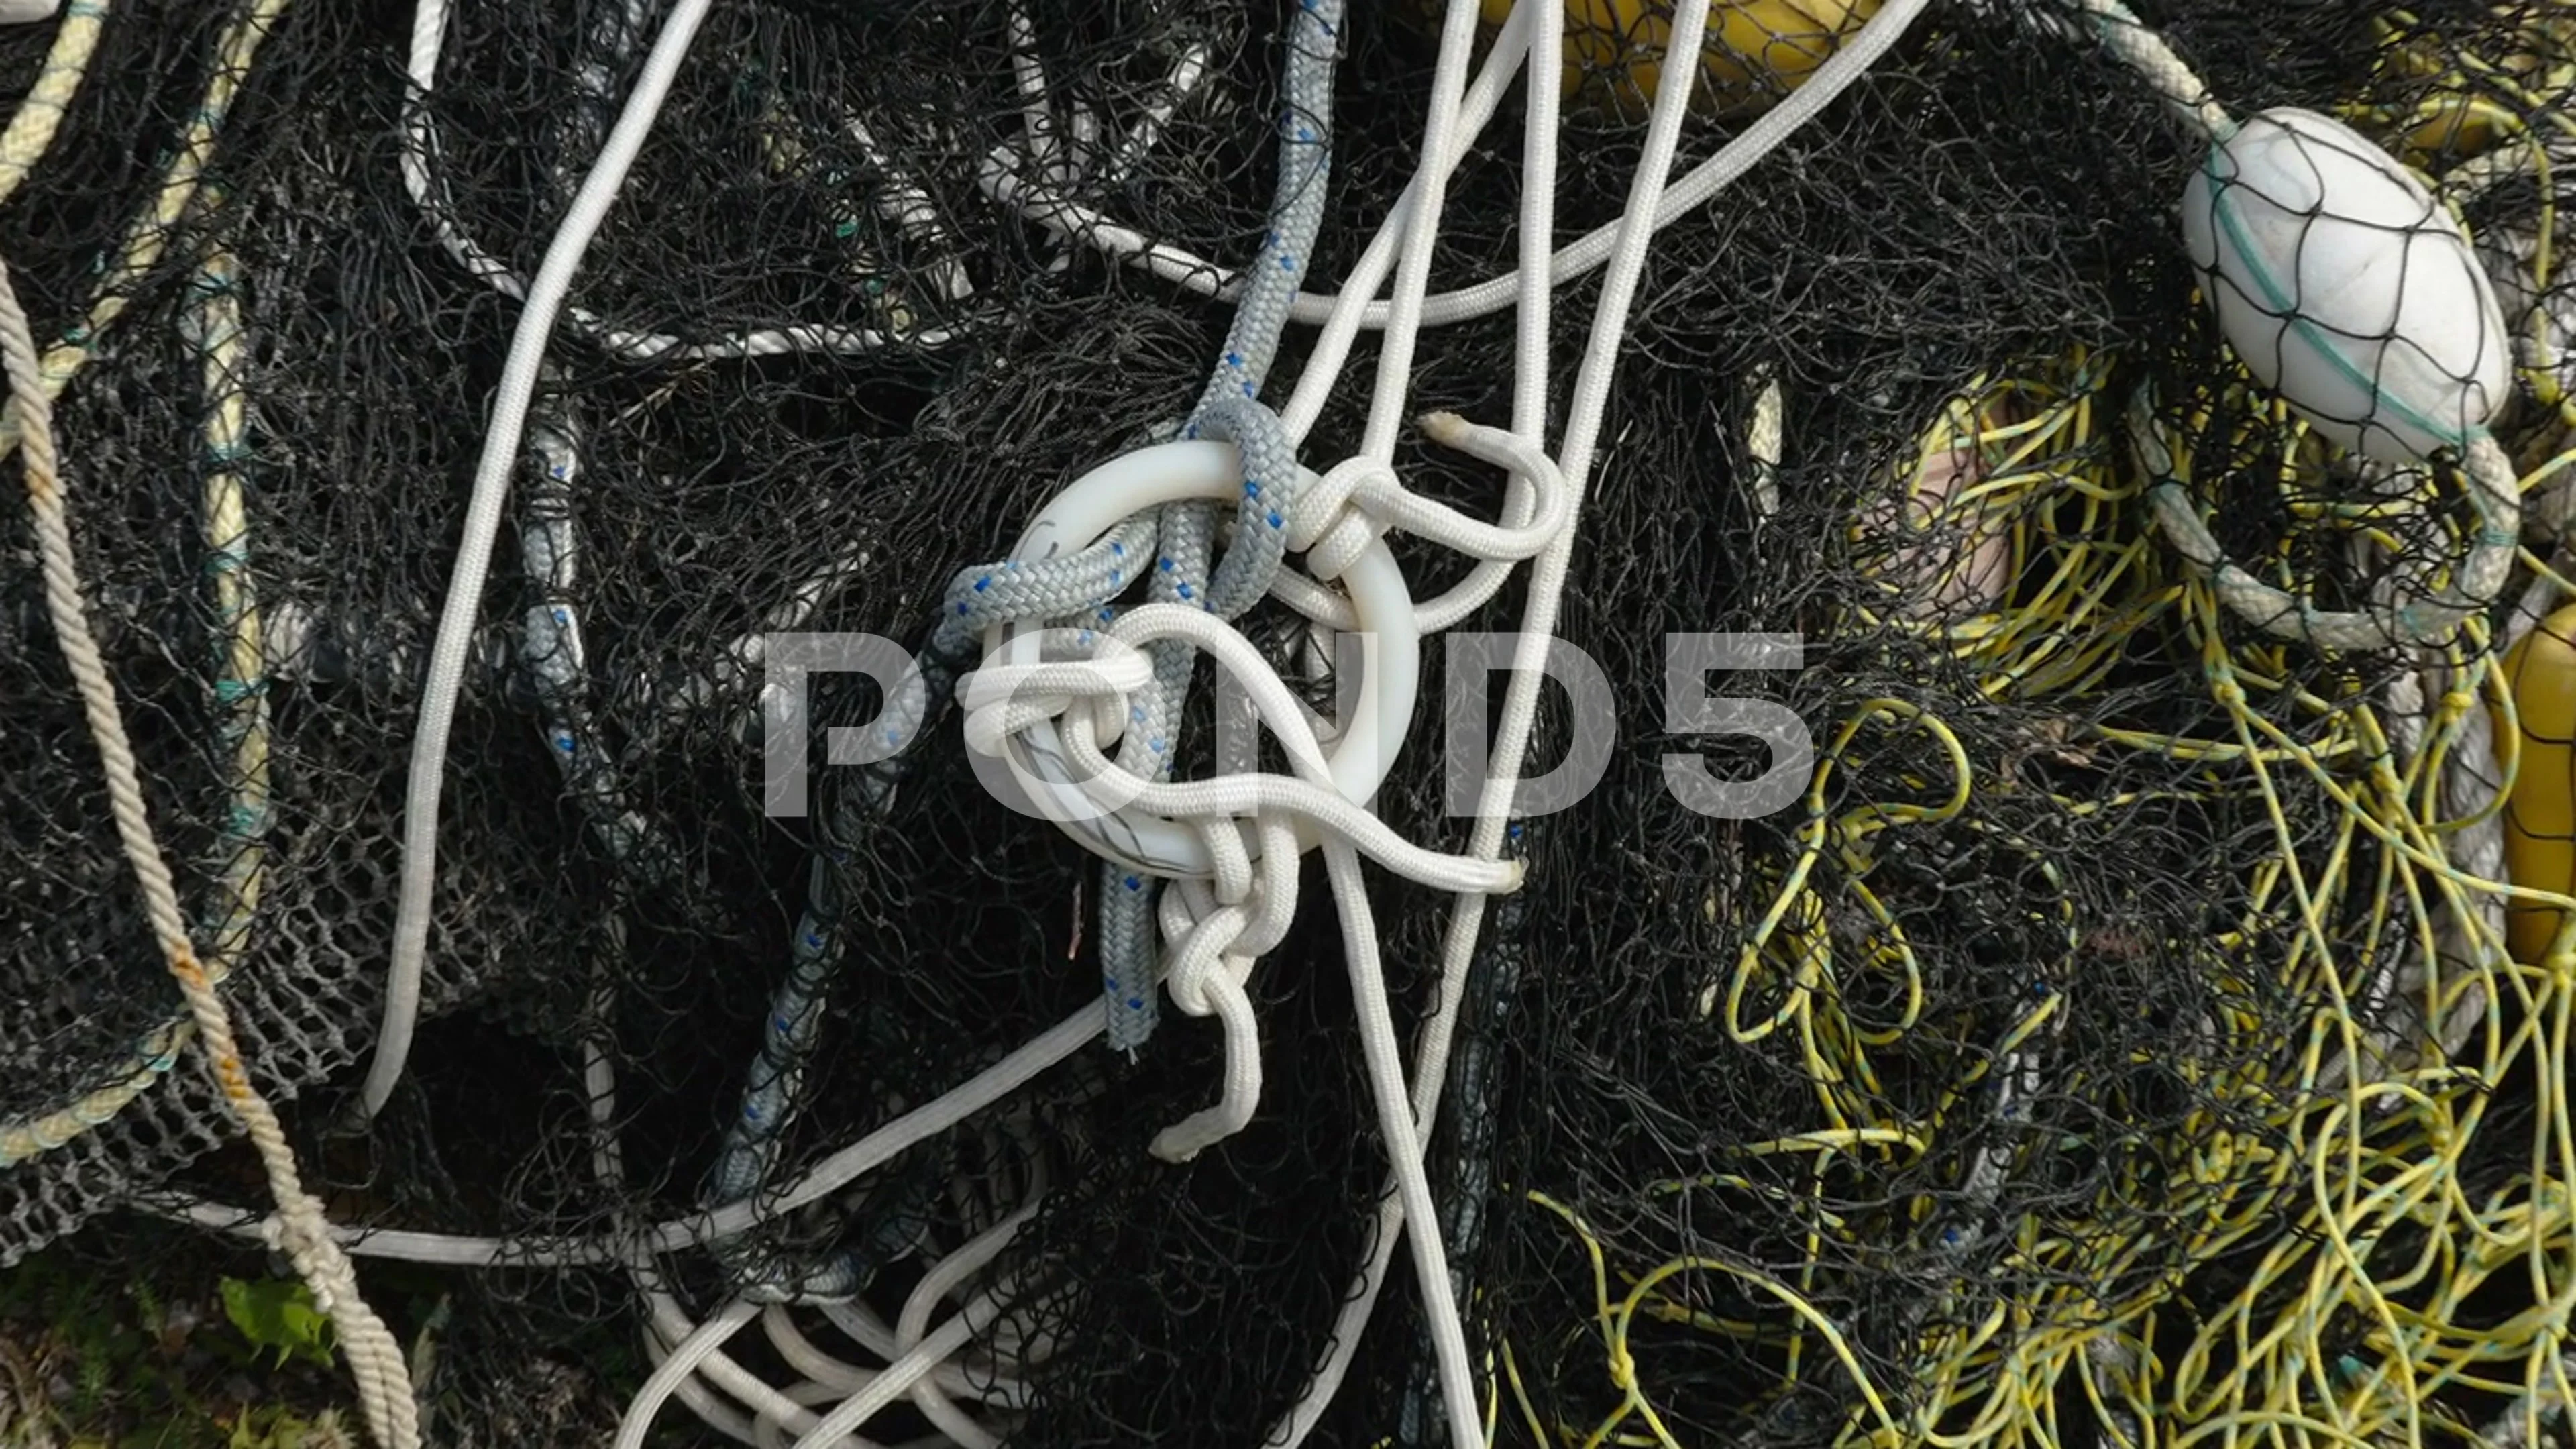 https://images.pond5.com/ropes-big-fishing-net-estonia-footage-198190885_prevstill.jpeg